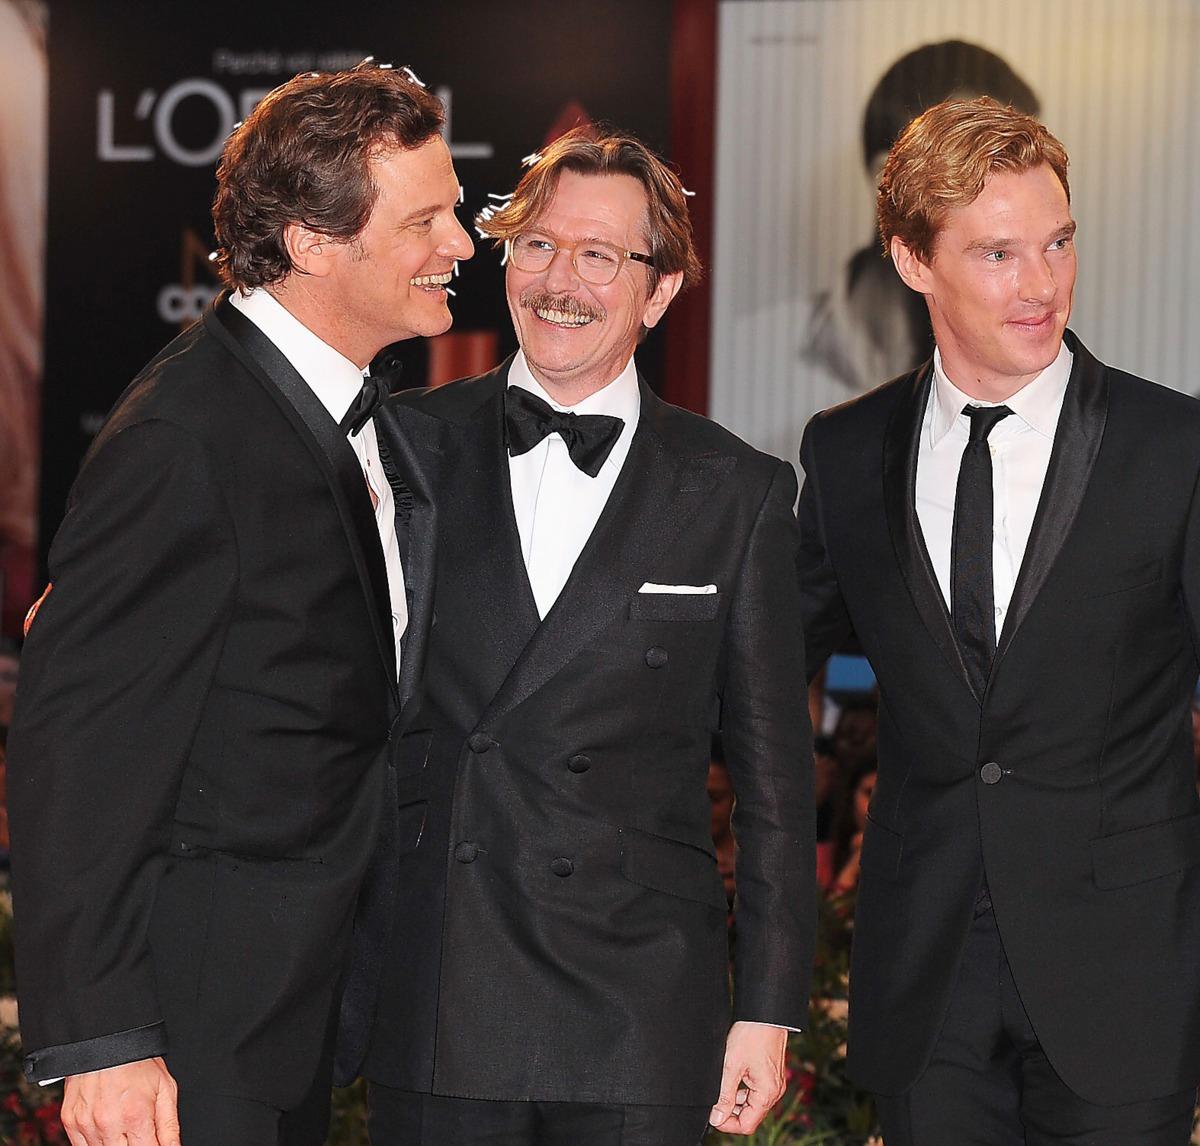 SPIONER ÄR VI ALLIHOPA Colin Firth, Gary Oldman och ”Sherlock”-stjärnan Benedict Cumberbatch är med i filmen och hade kul på galapremiären i går.